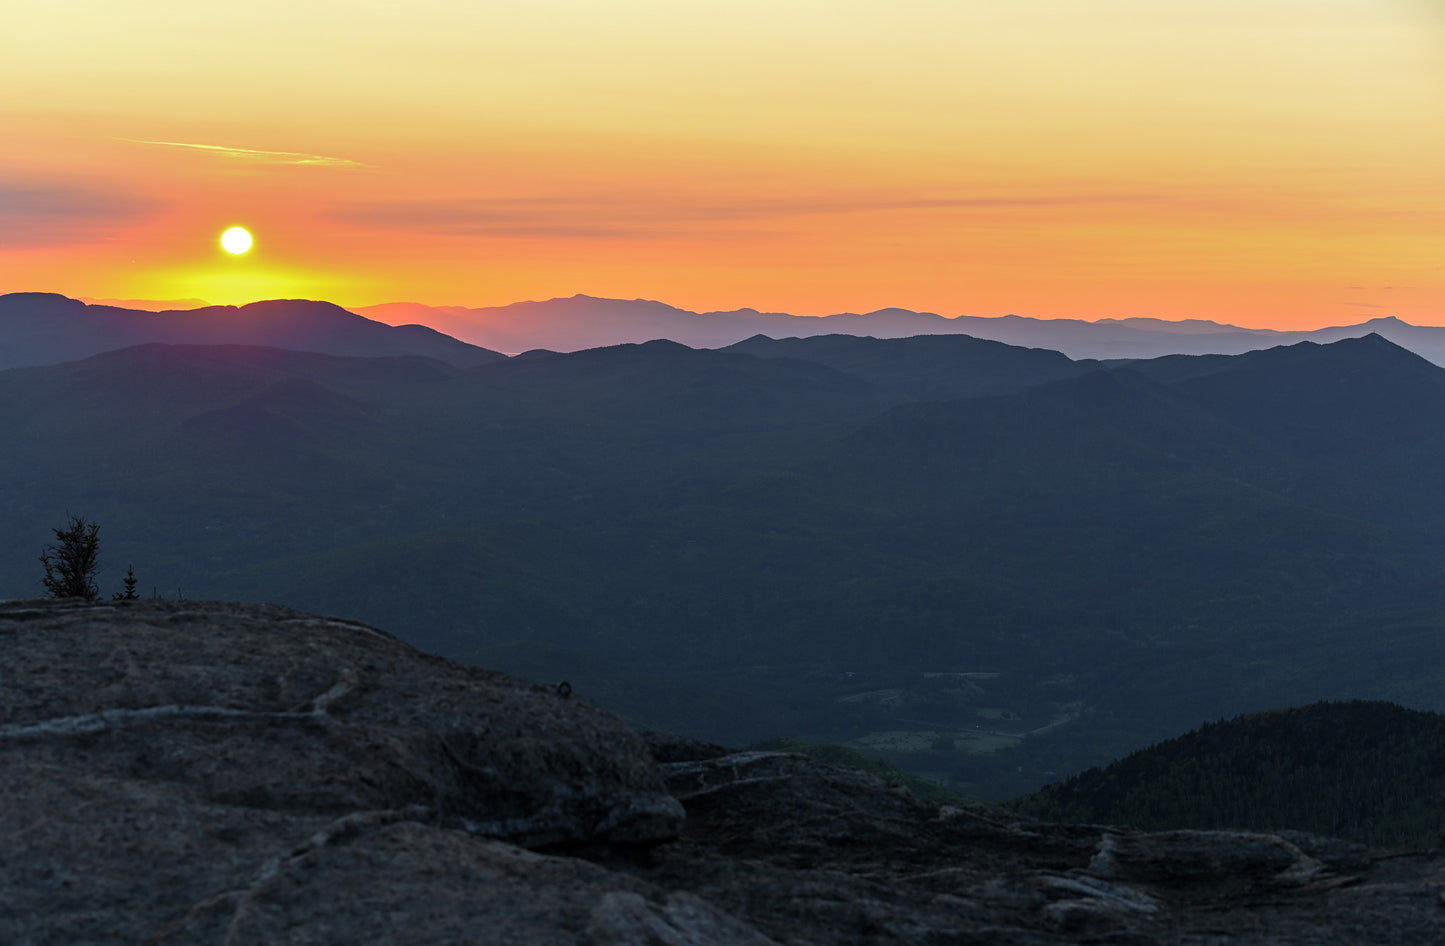 Sunrise on the Adirondack mountains 